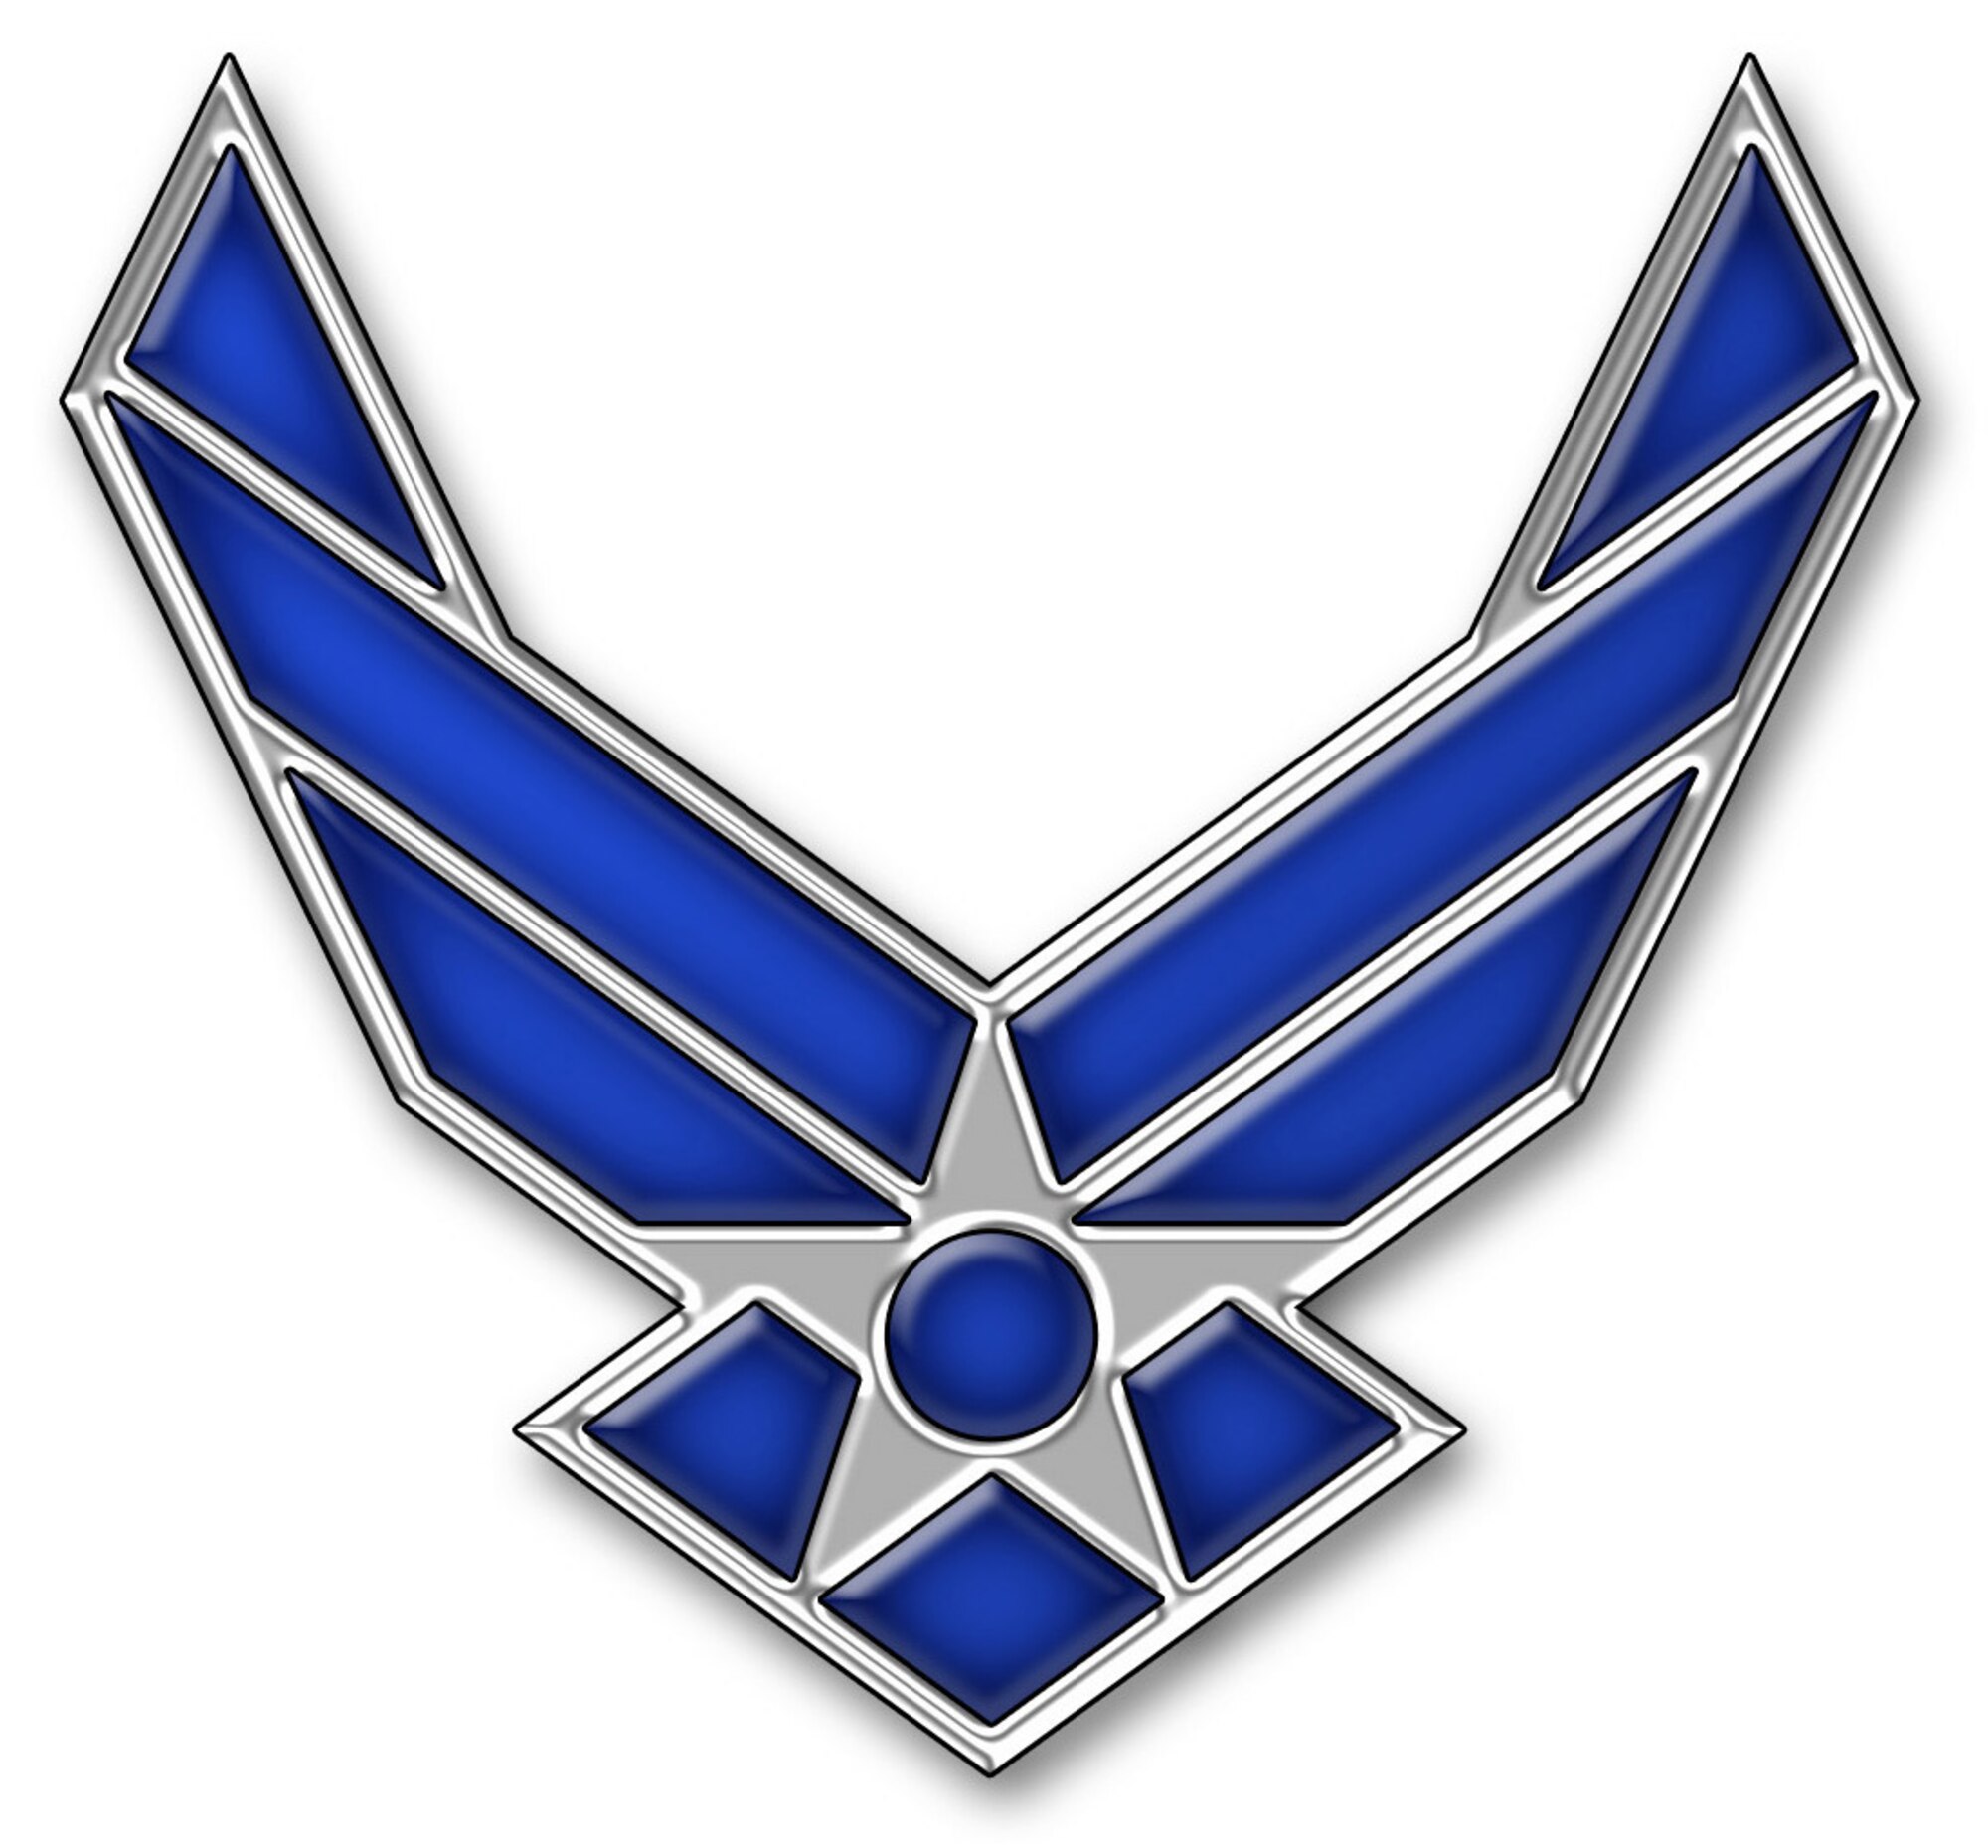 U.S. Air Force symbol